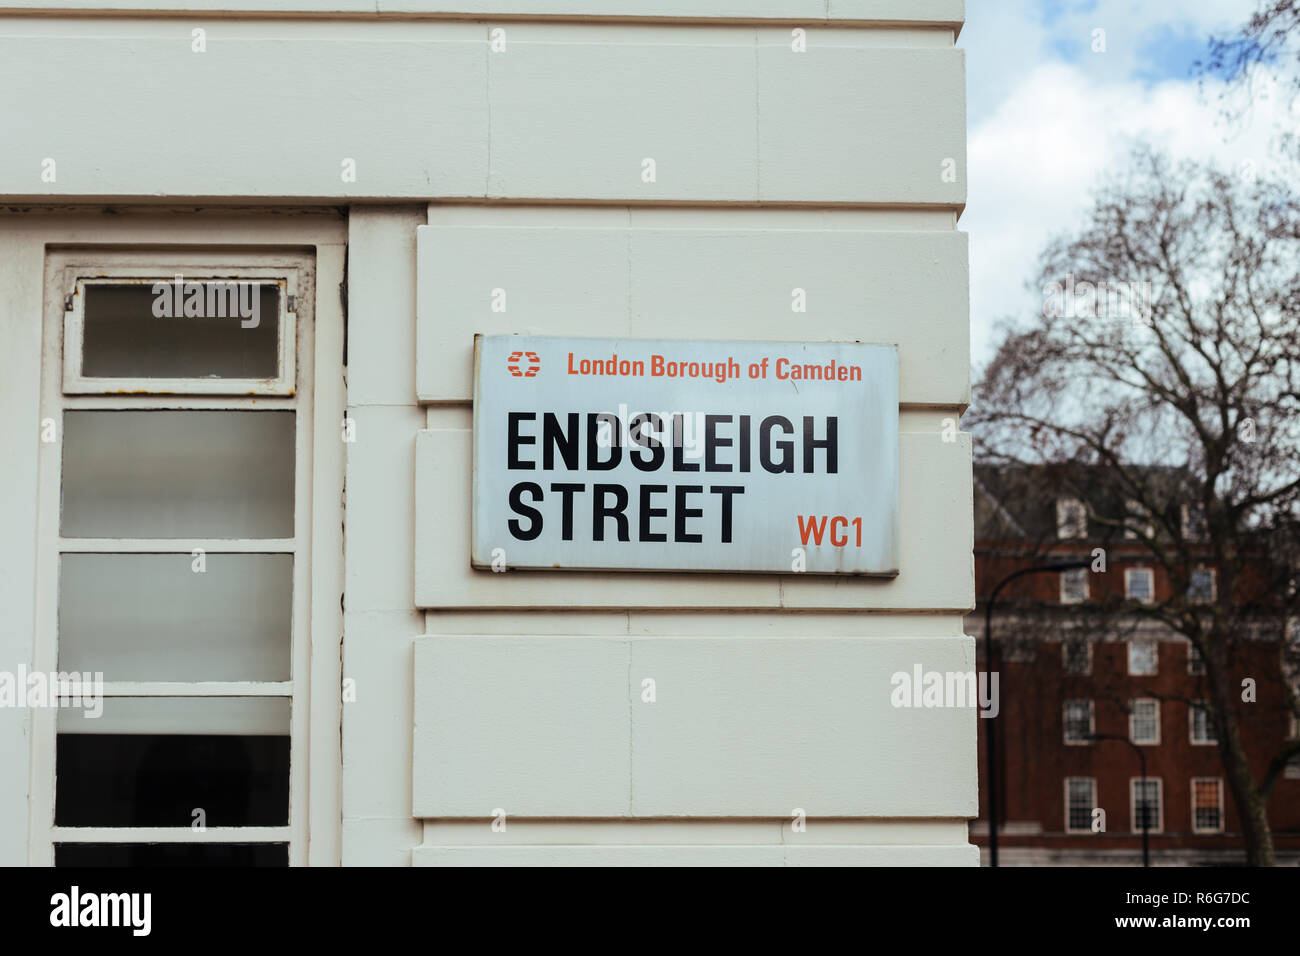 Endsleigh Street Name Sign, London Borough of Camden, UK Stock Photo